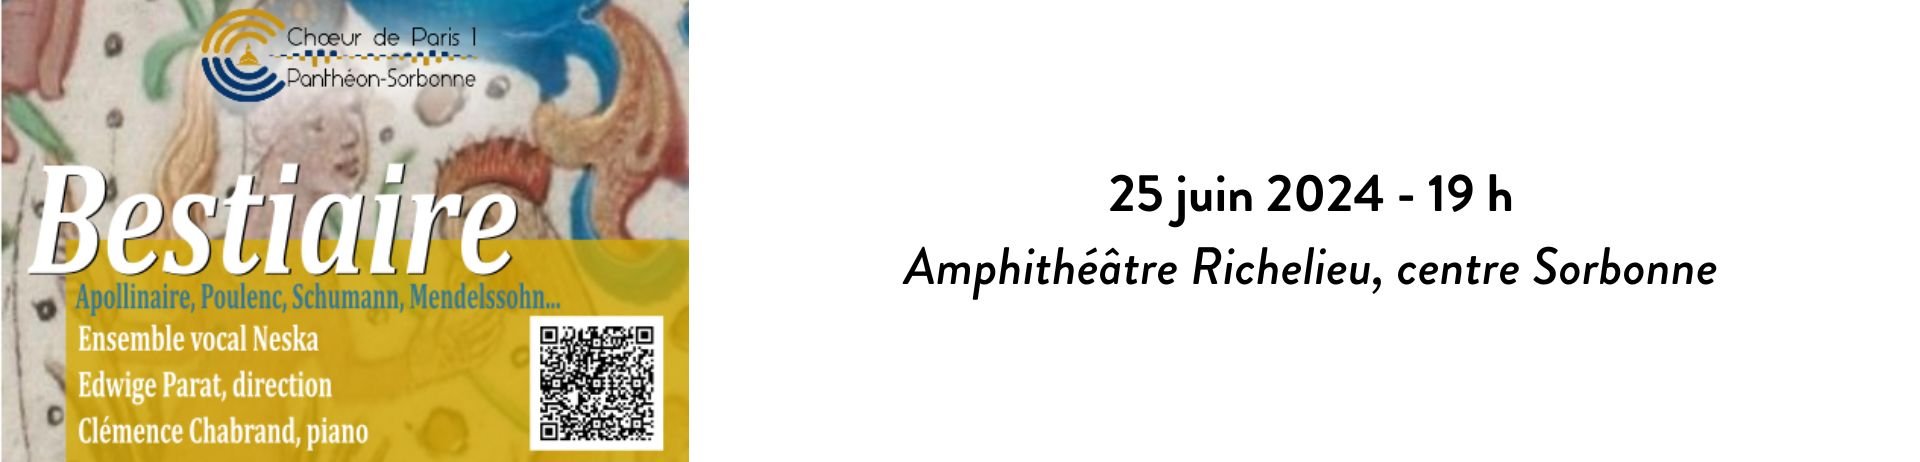 Concert Choeur de Paris 1 Panthéon-Sorbonne Bestiaire le 25 juin 19 h